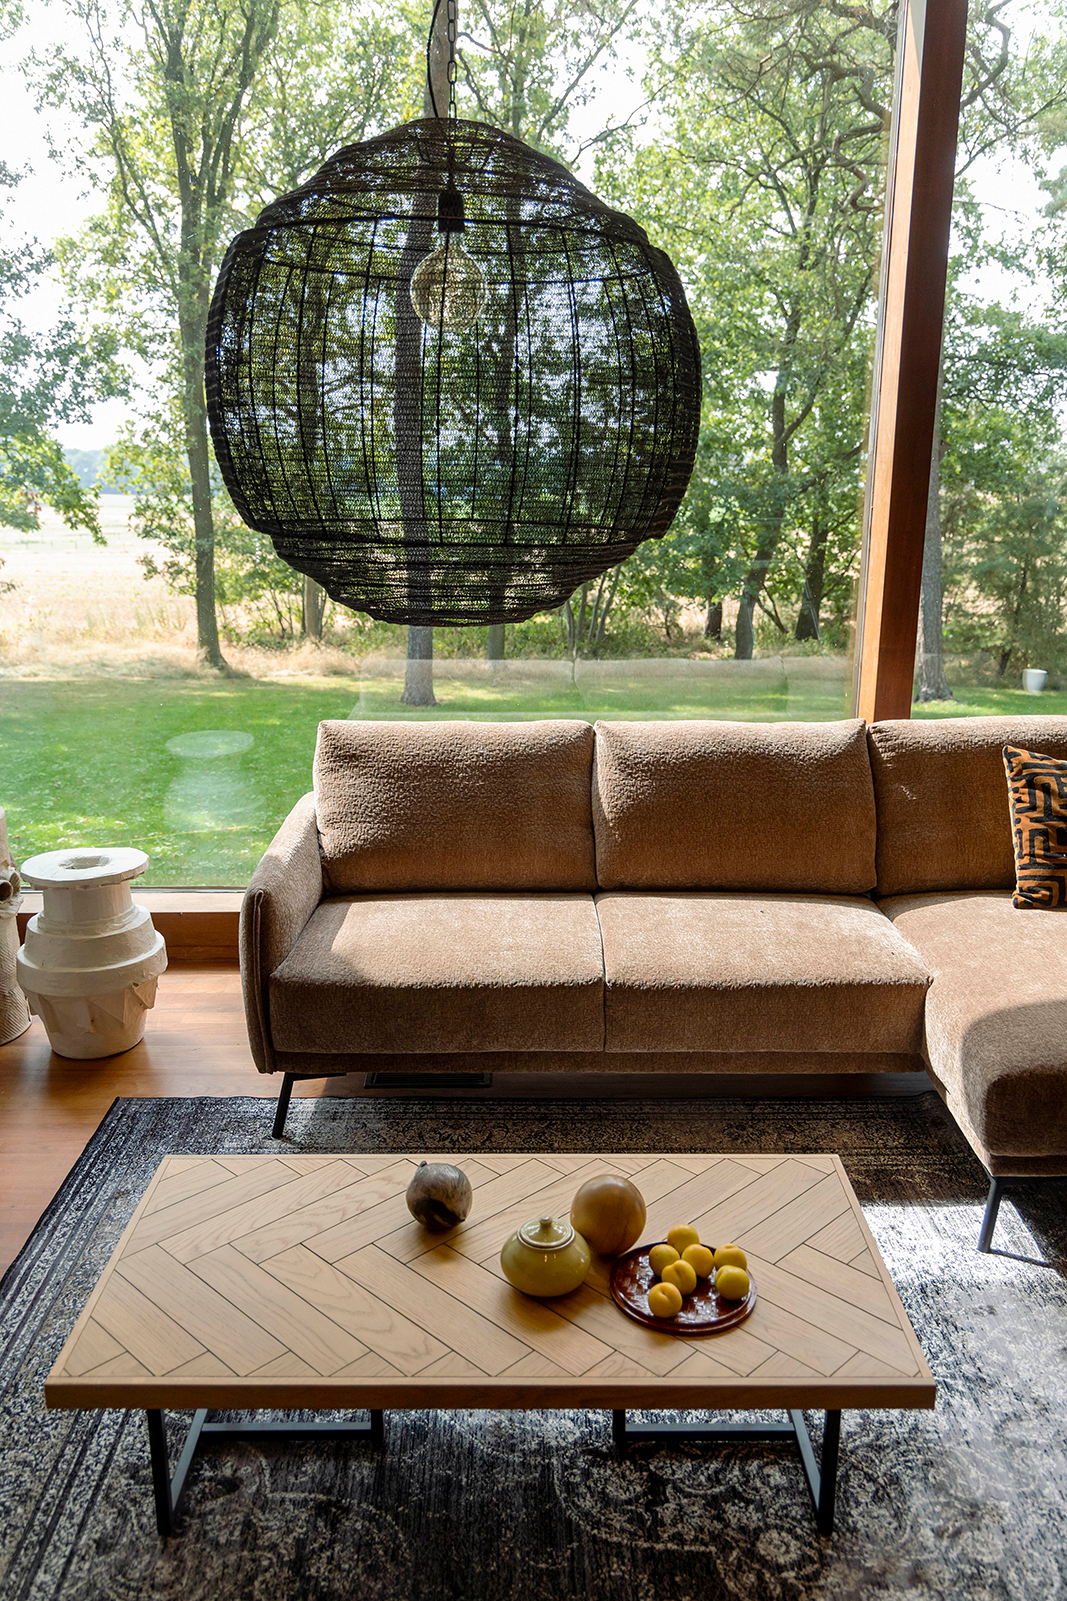 Sofa HARPER RIGHT - KAQTU Design